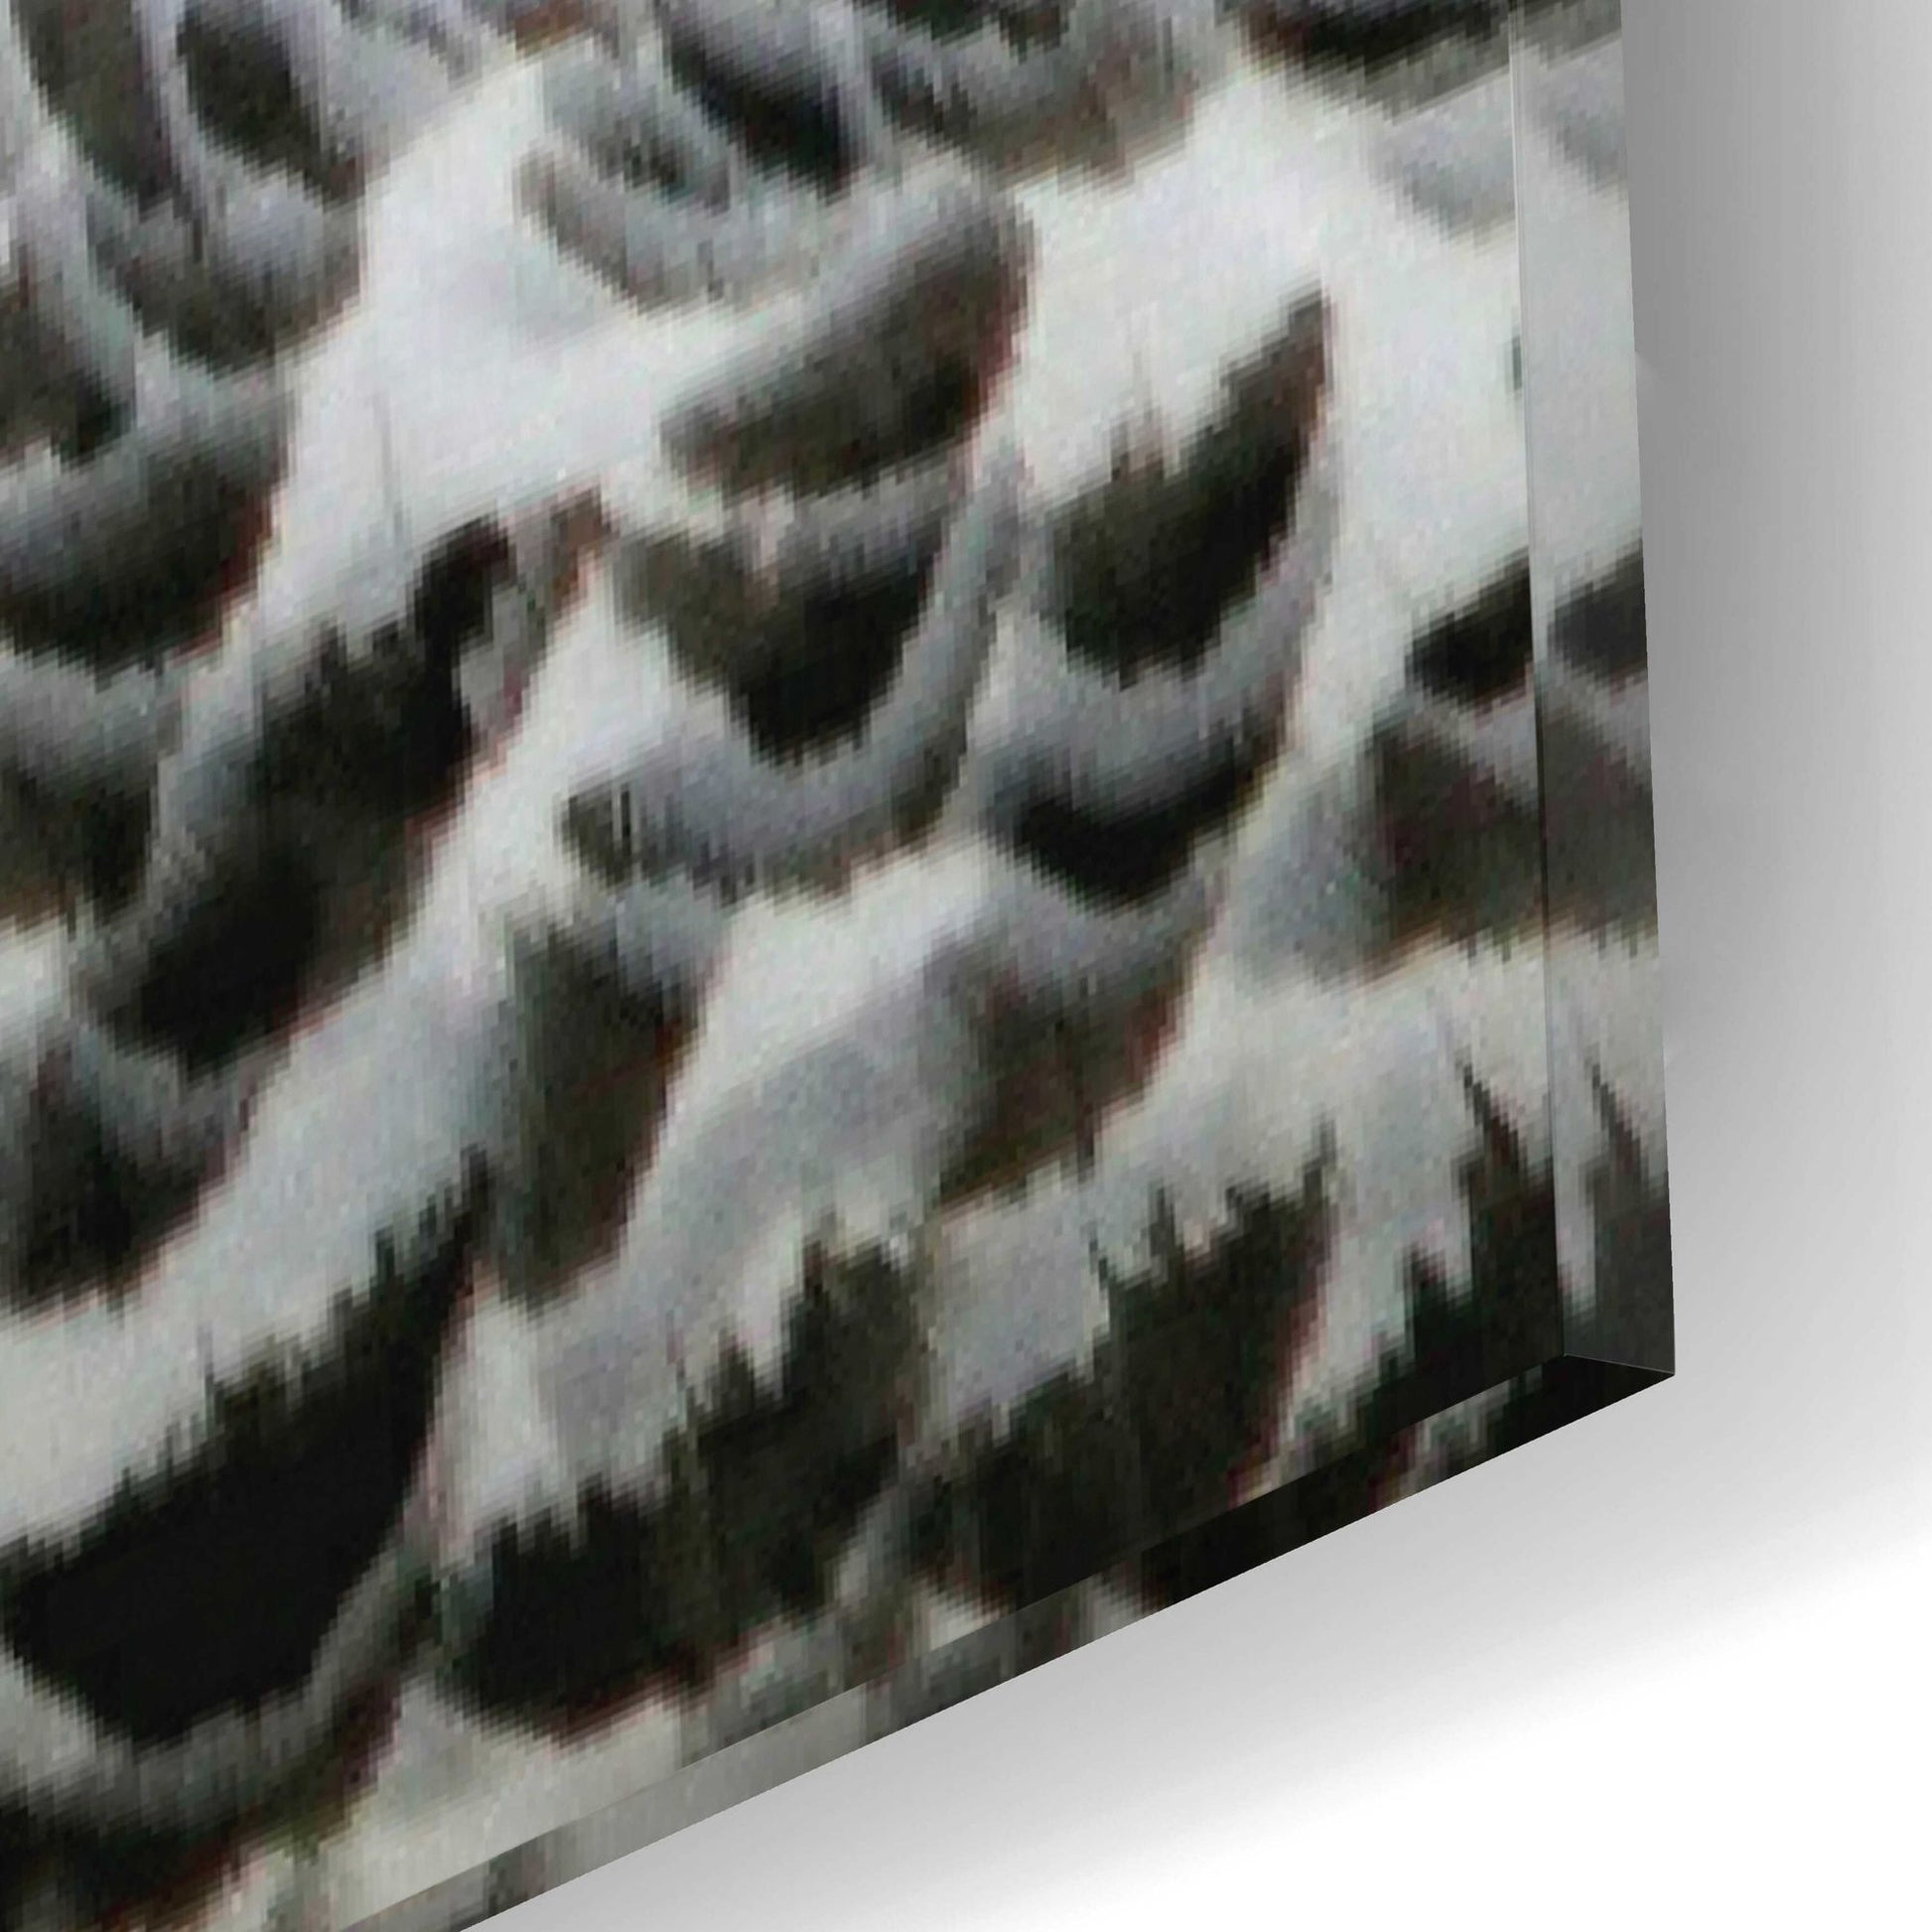 Epic Art 'Snowy Owl' by Epic Portfolio, Acrylic Glass Wall Art,12x16